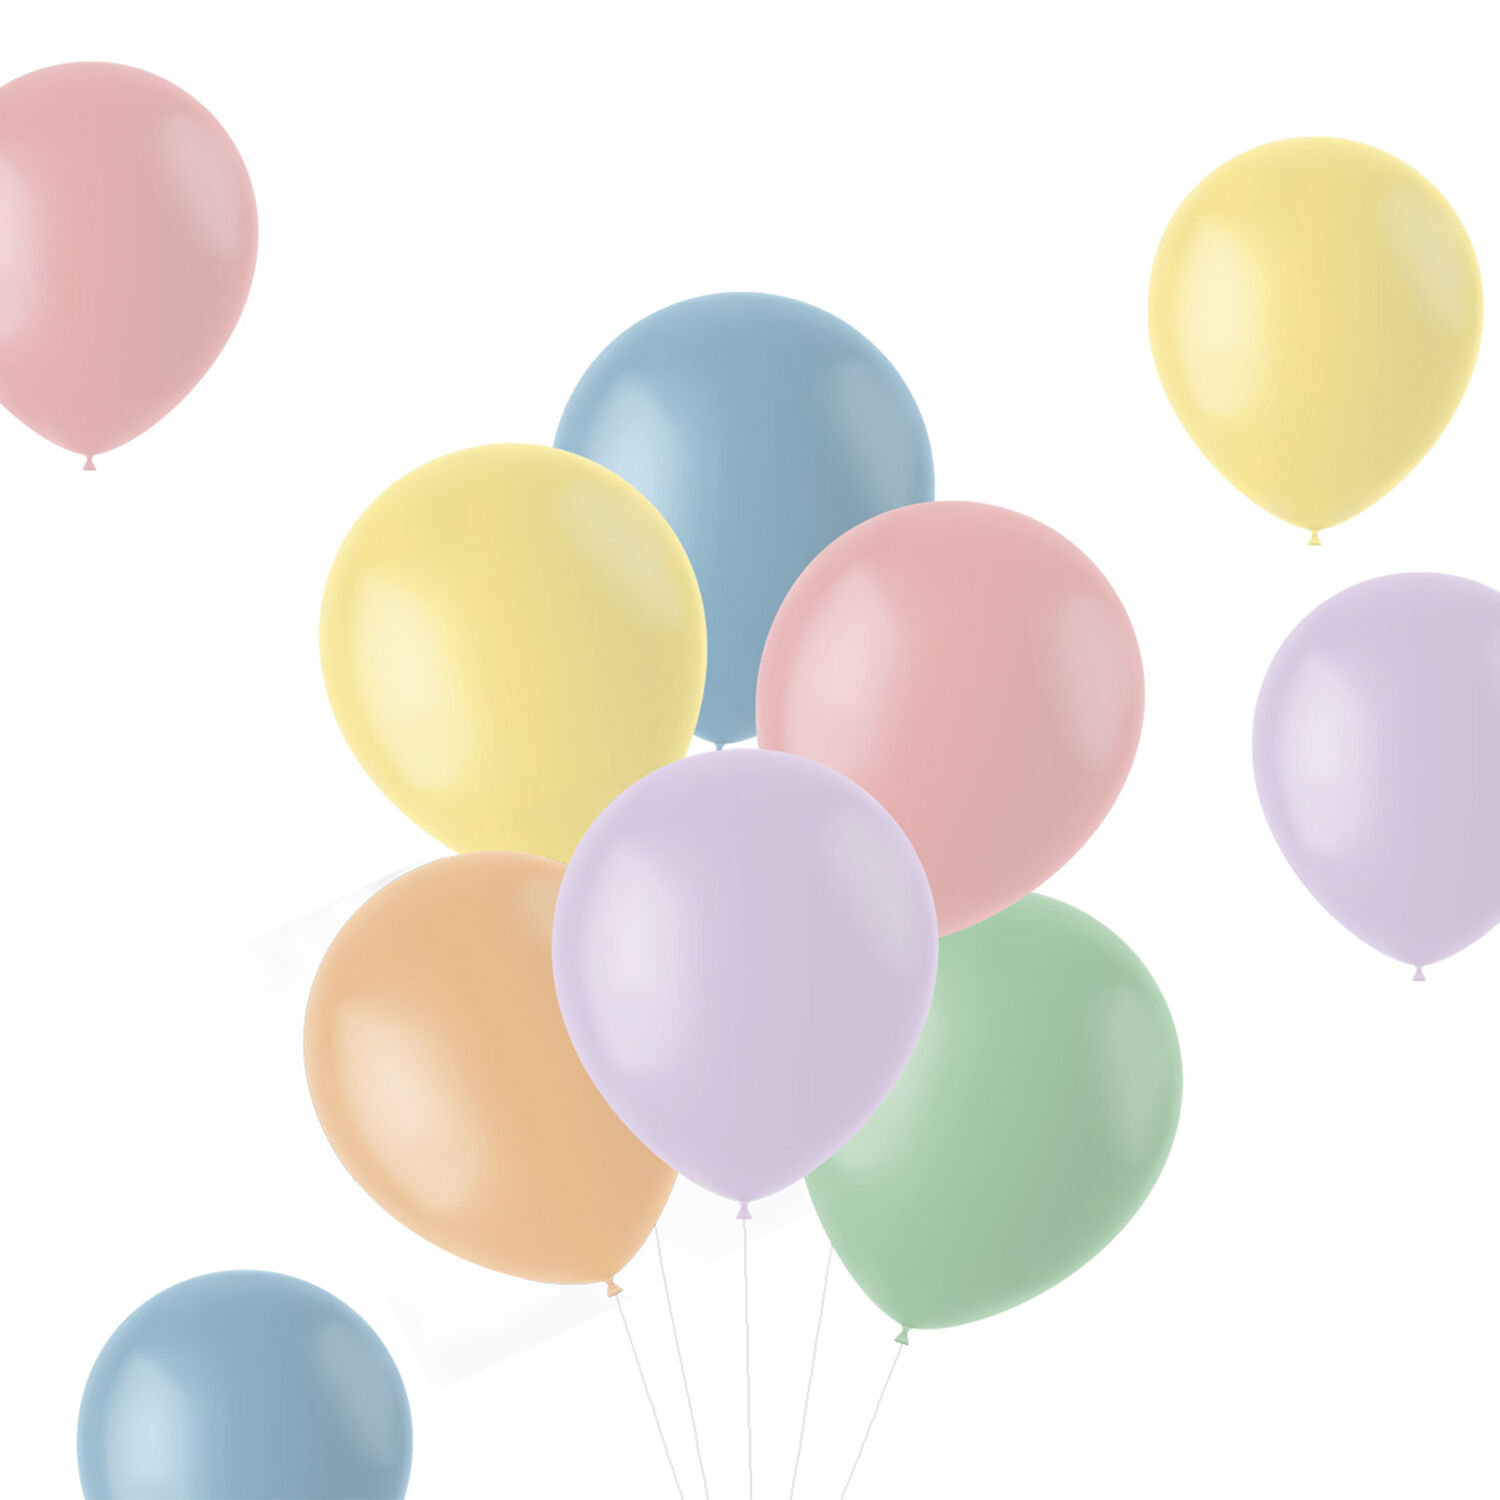 NEU Latex-Luftballons matt, 33cm, Pastelltöne bunt gemischt, 100 Stück